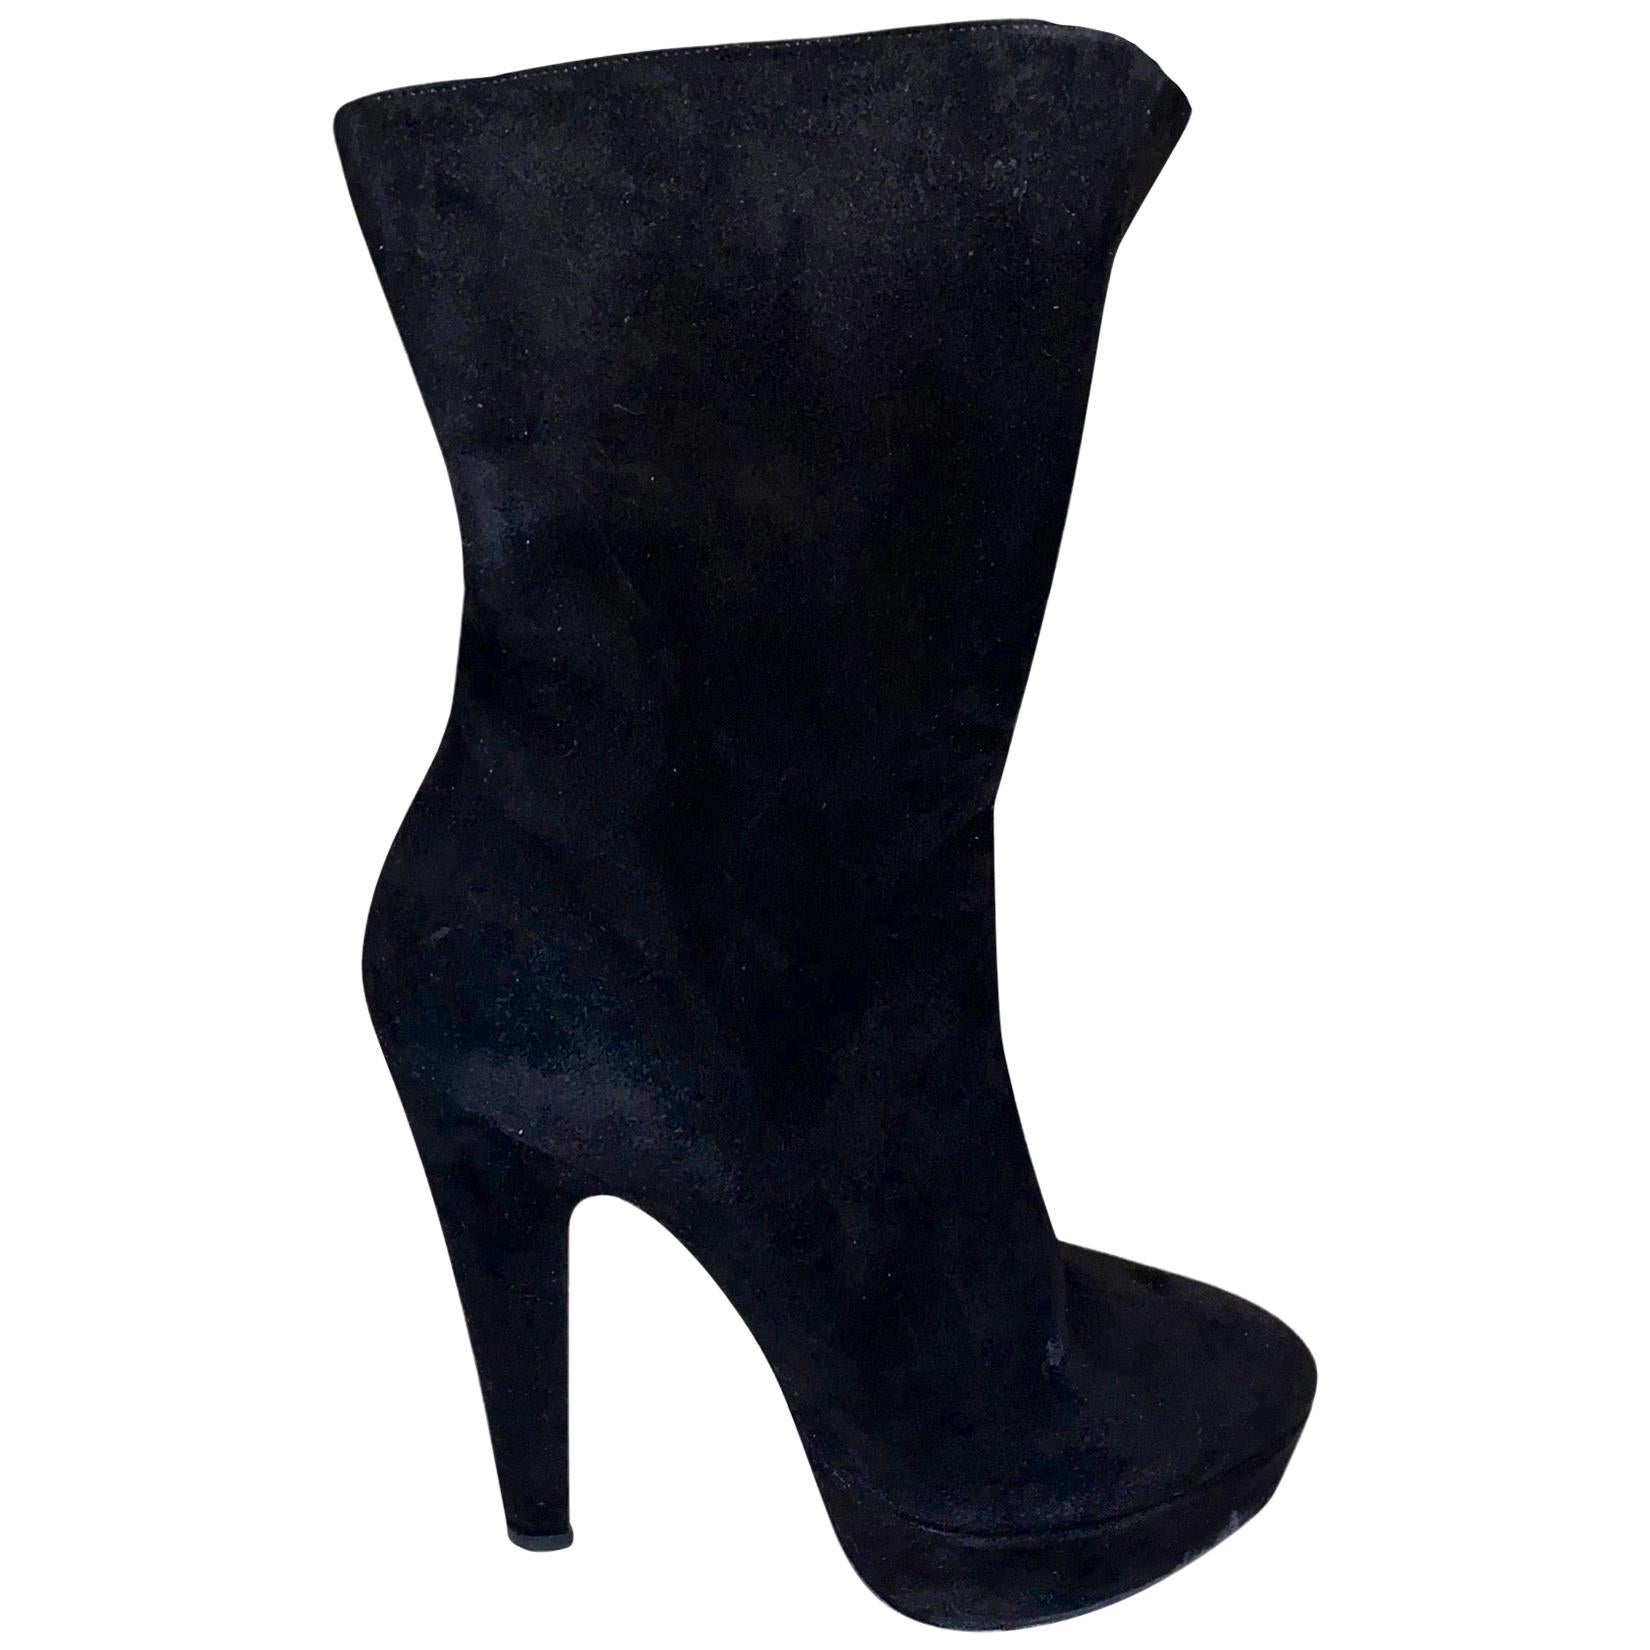 UNWORN Alaia Black Suede Platform Lace Up Boots Booties High Heels